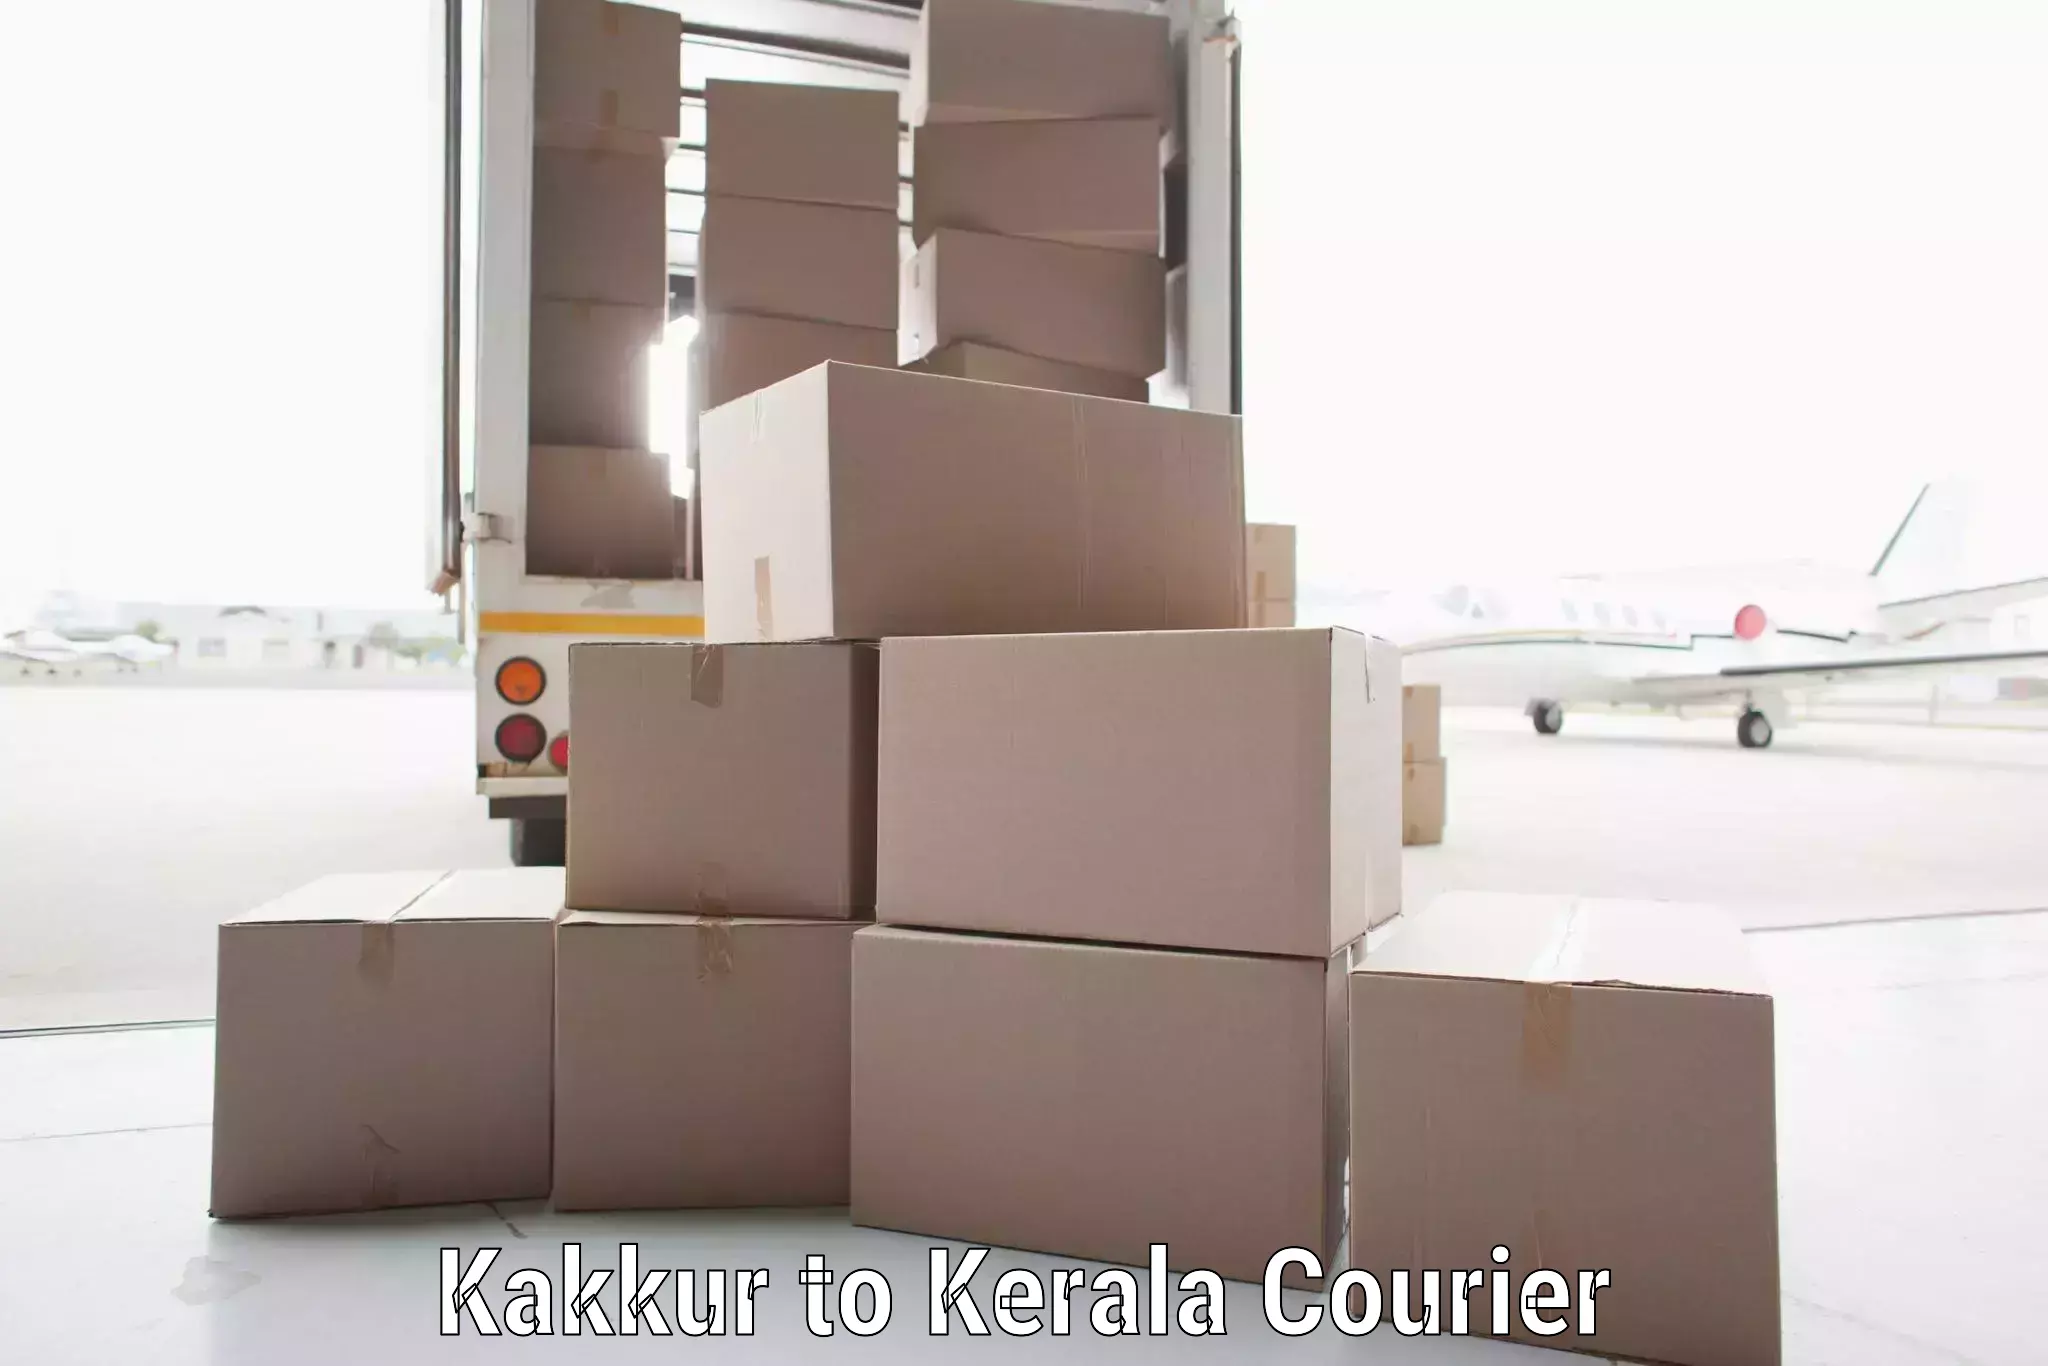 Rural area delivery Kakkur to Cochin Port Kochi